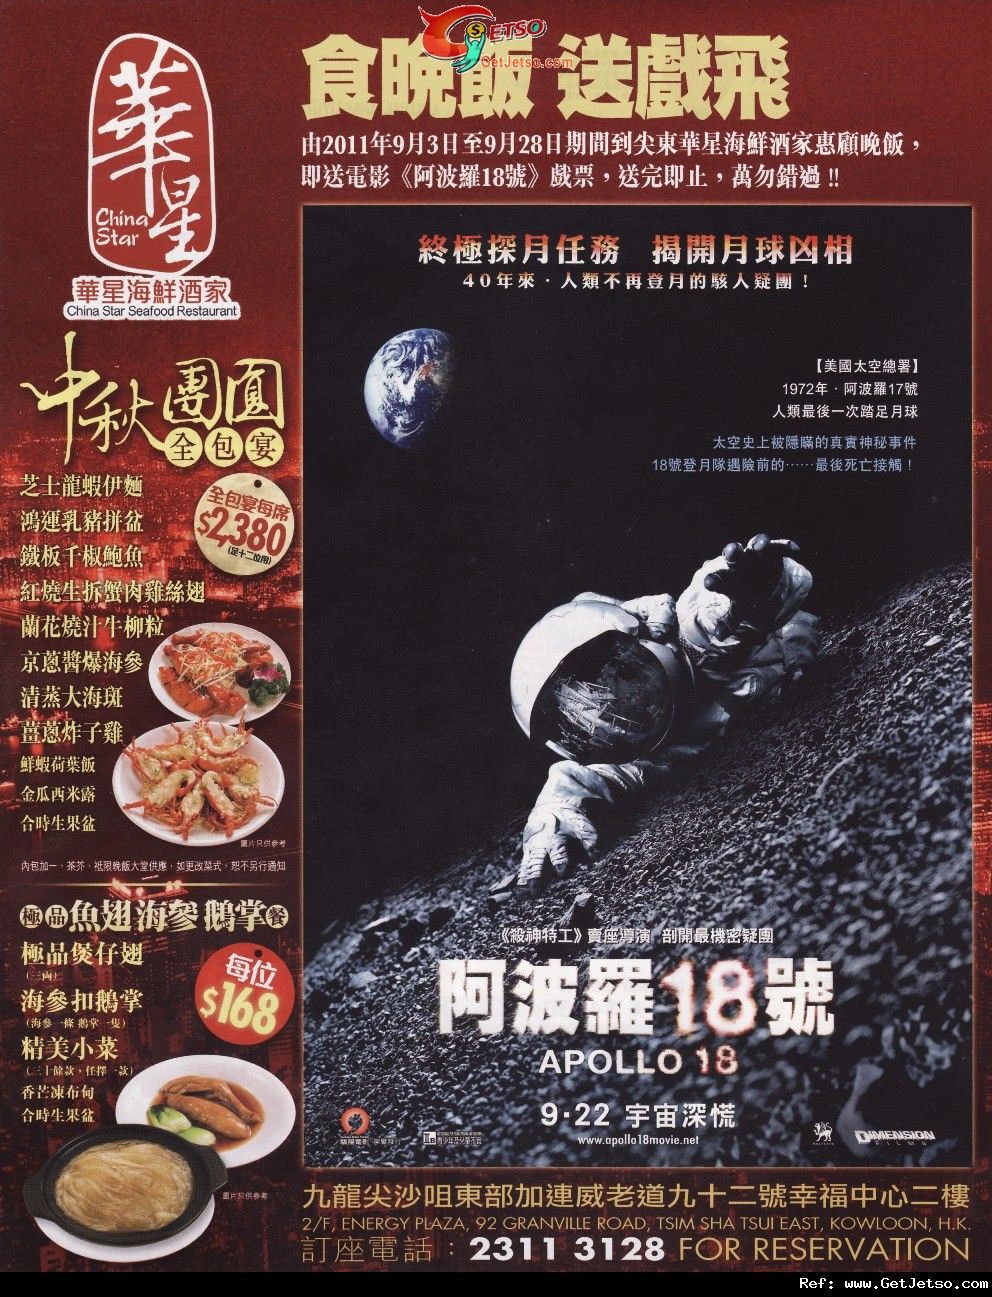 華星海鮮酒家惠顧晚飯免費送阿波羅18號戲票優惠(至11年9月28日)圖片1